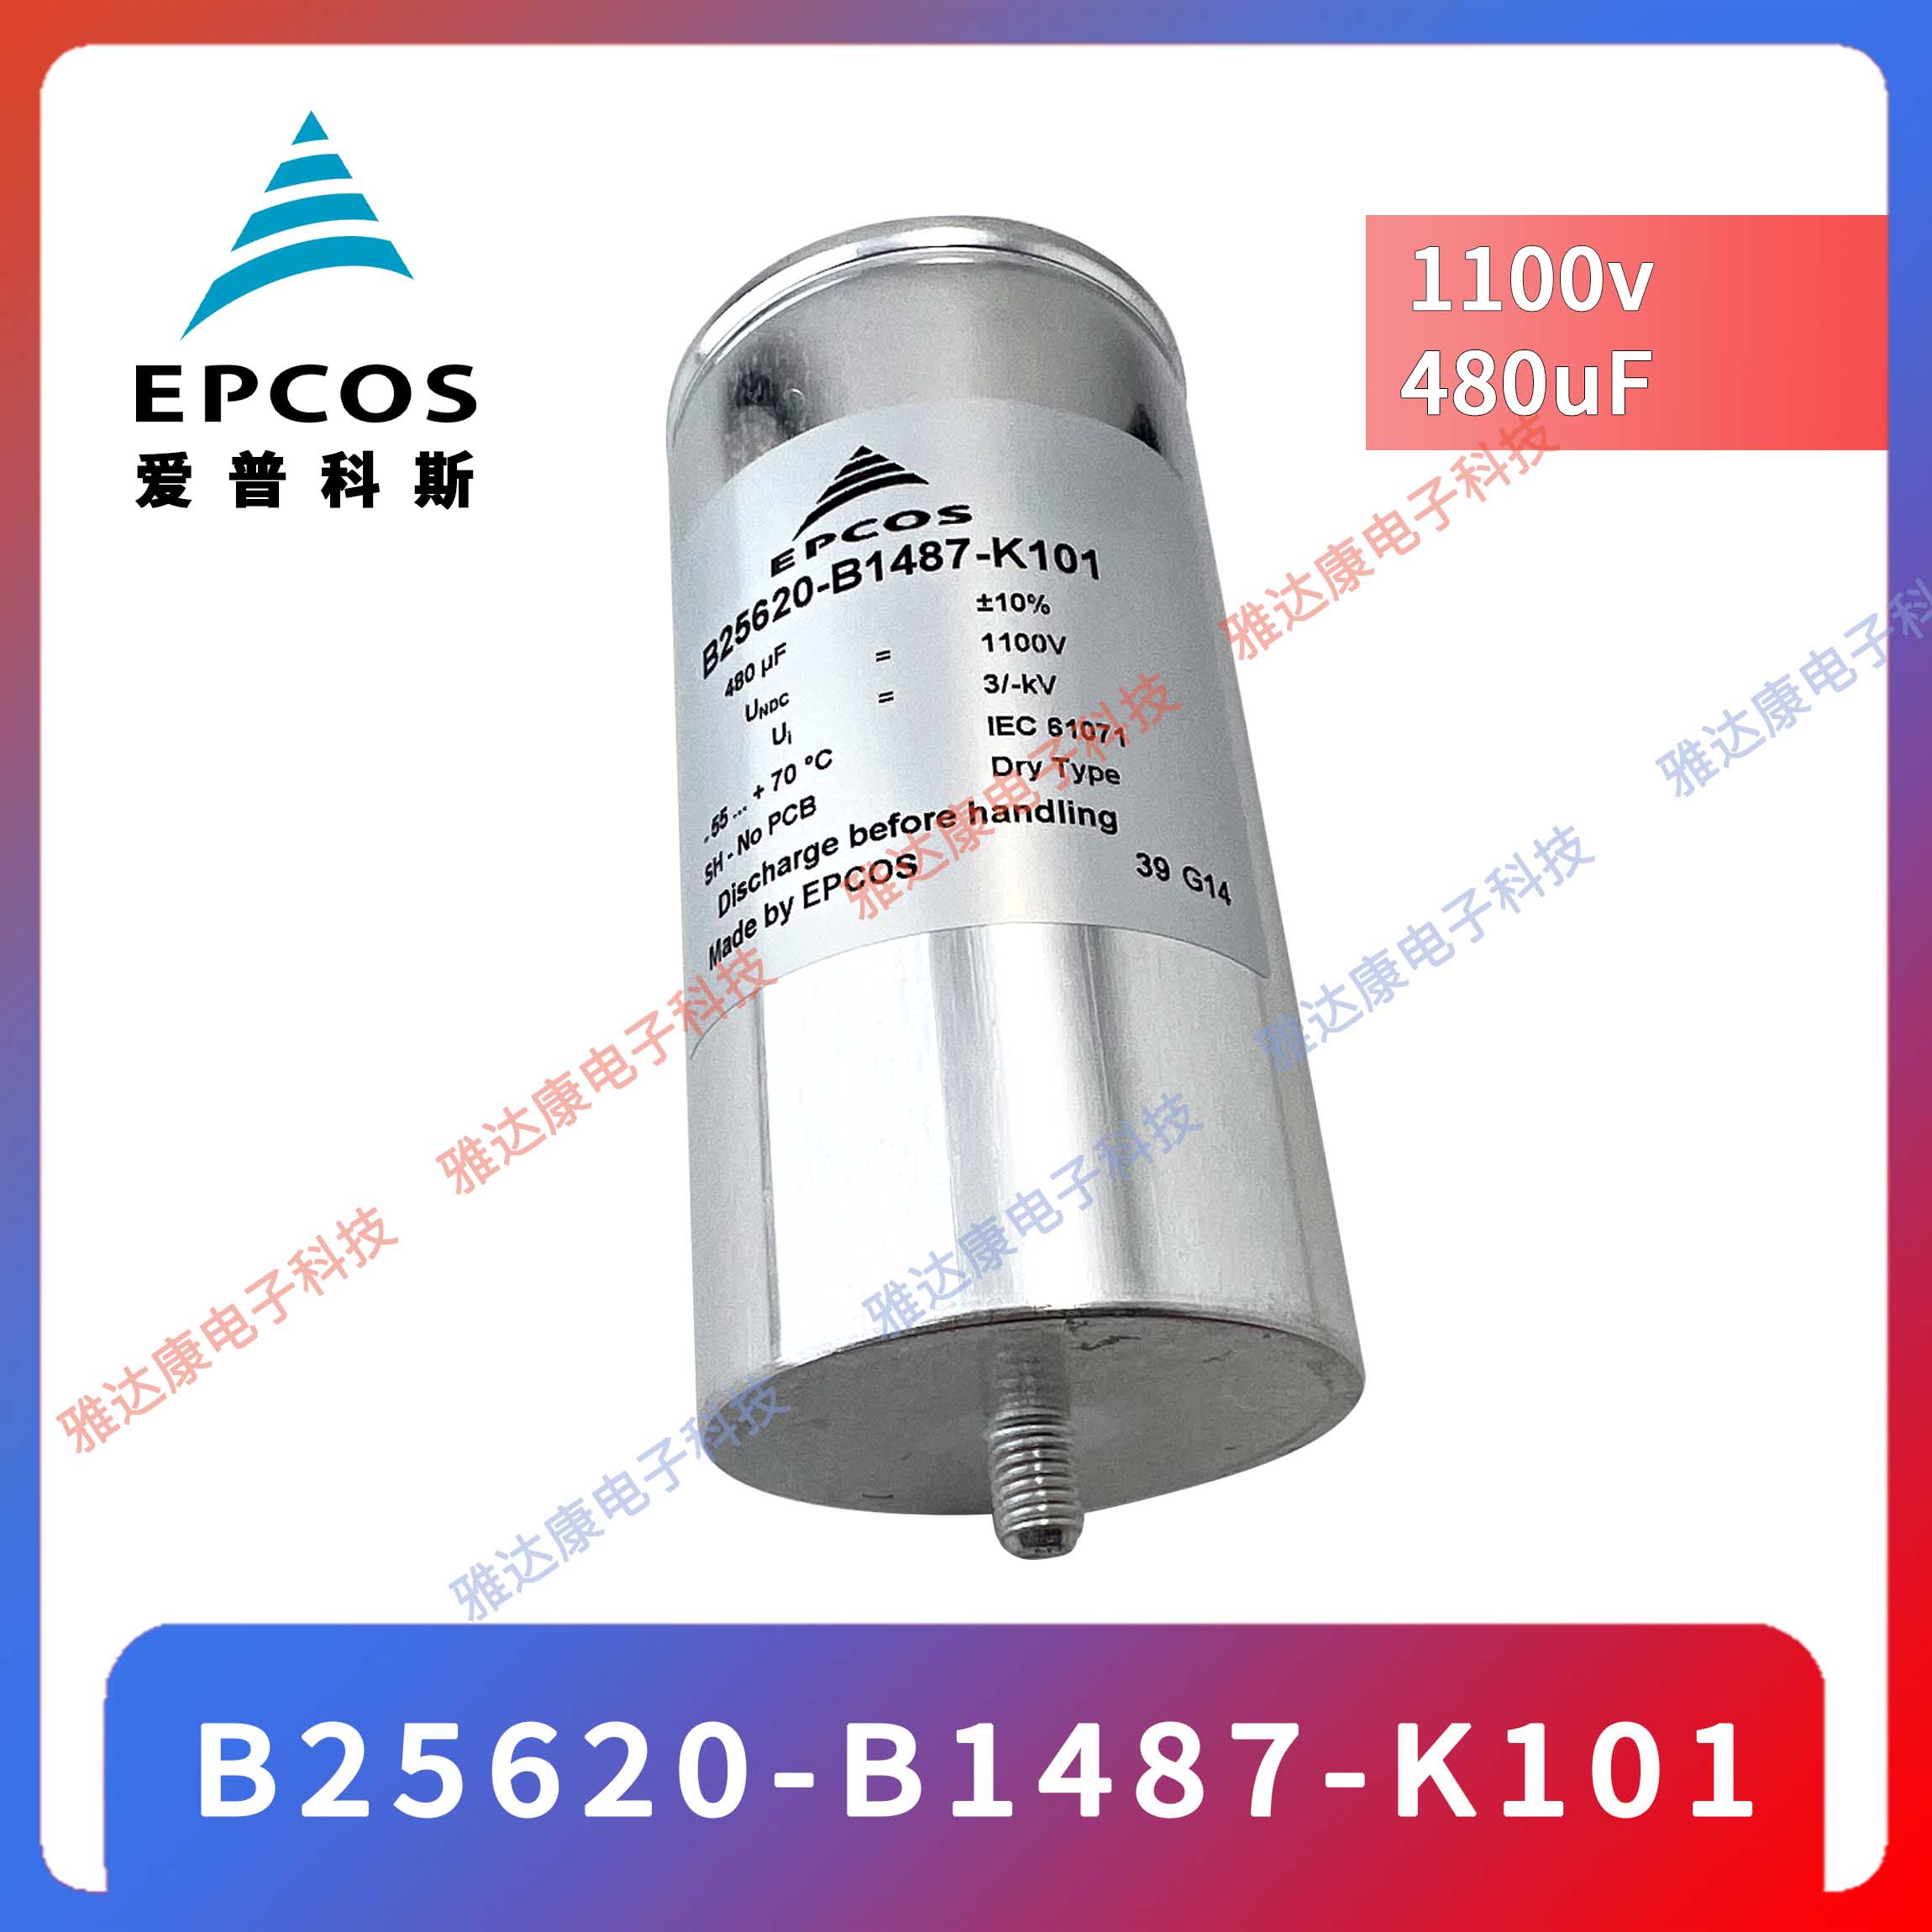 EPCOS电容器优势供应薄膜电容器MKK415-D-25-02 B25673A4282A140图片